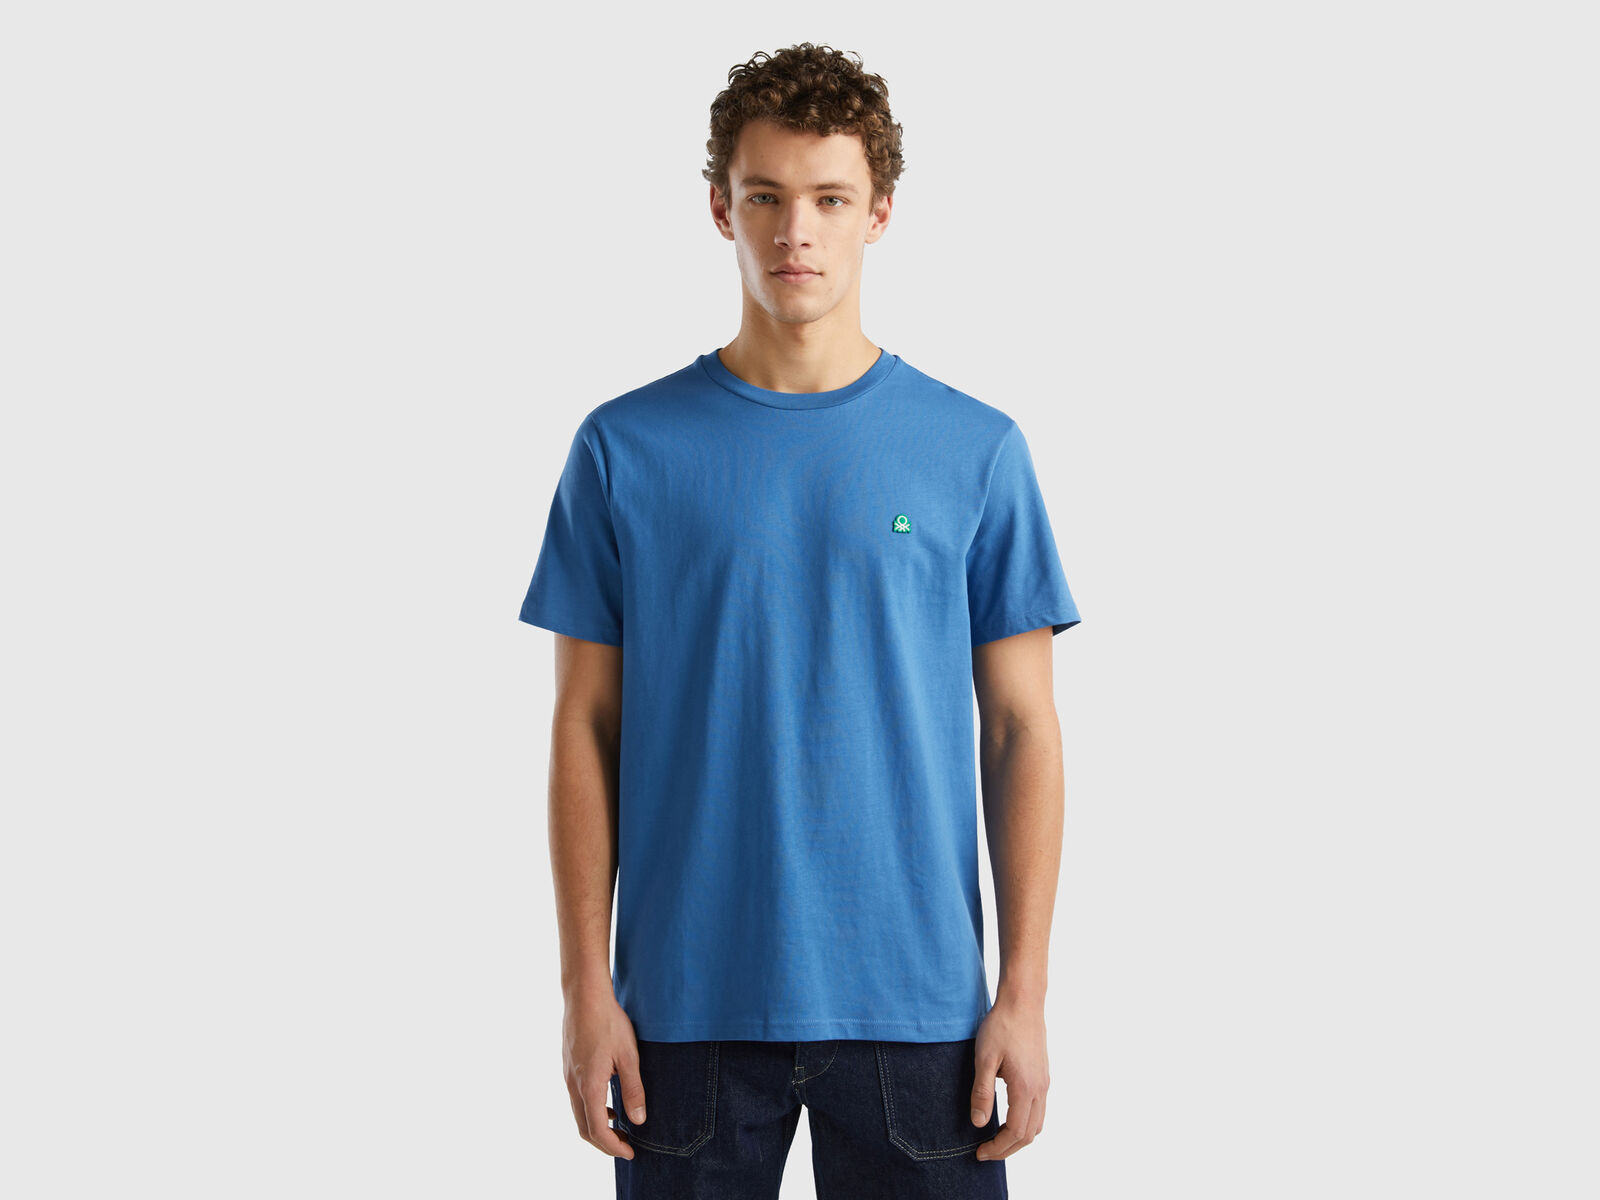 Basics - Men's Ethical T-shirt